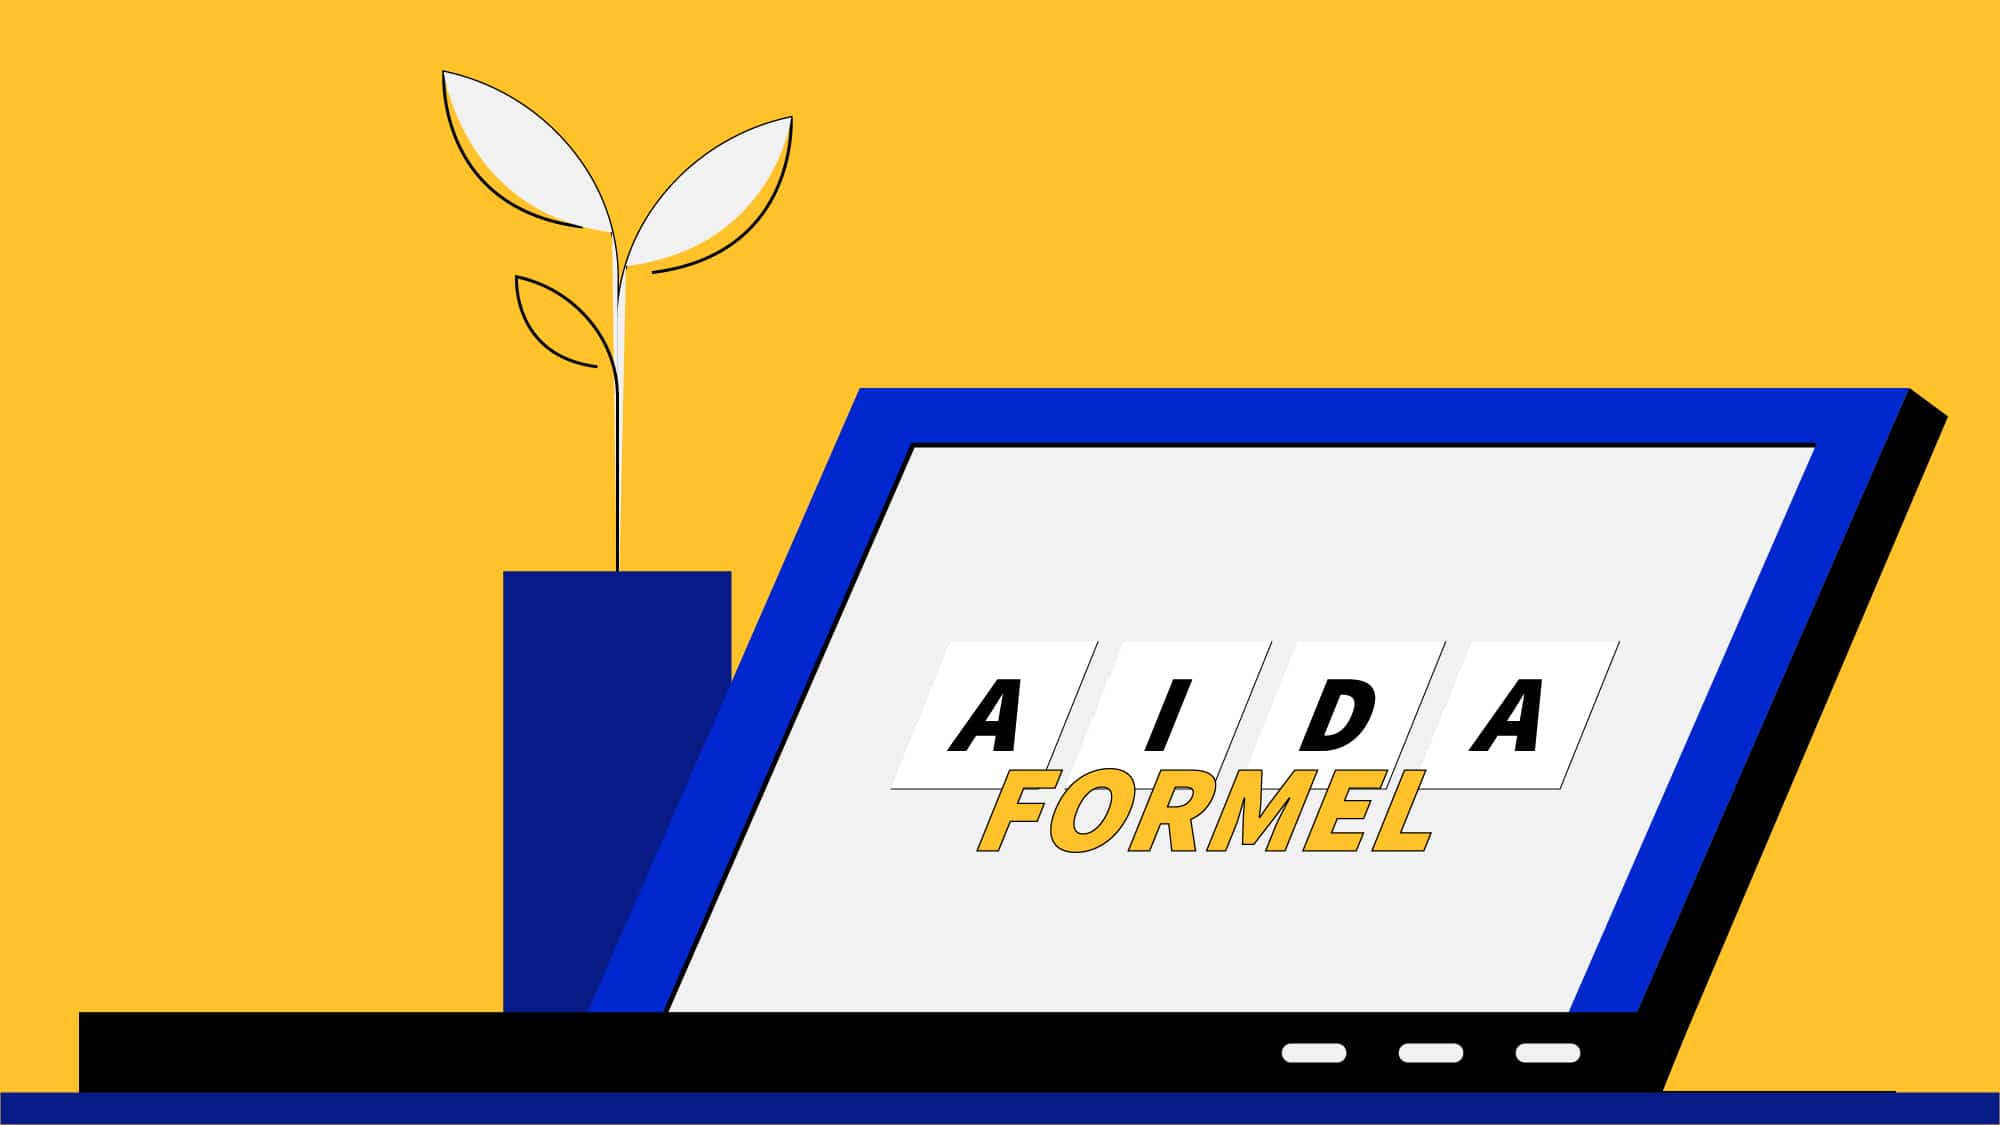 AIDA-Formel